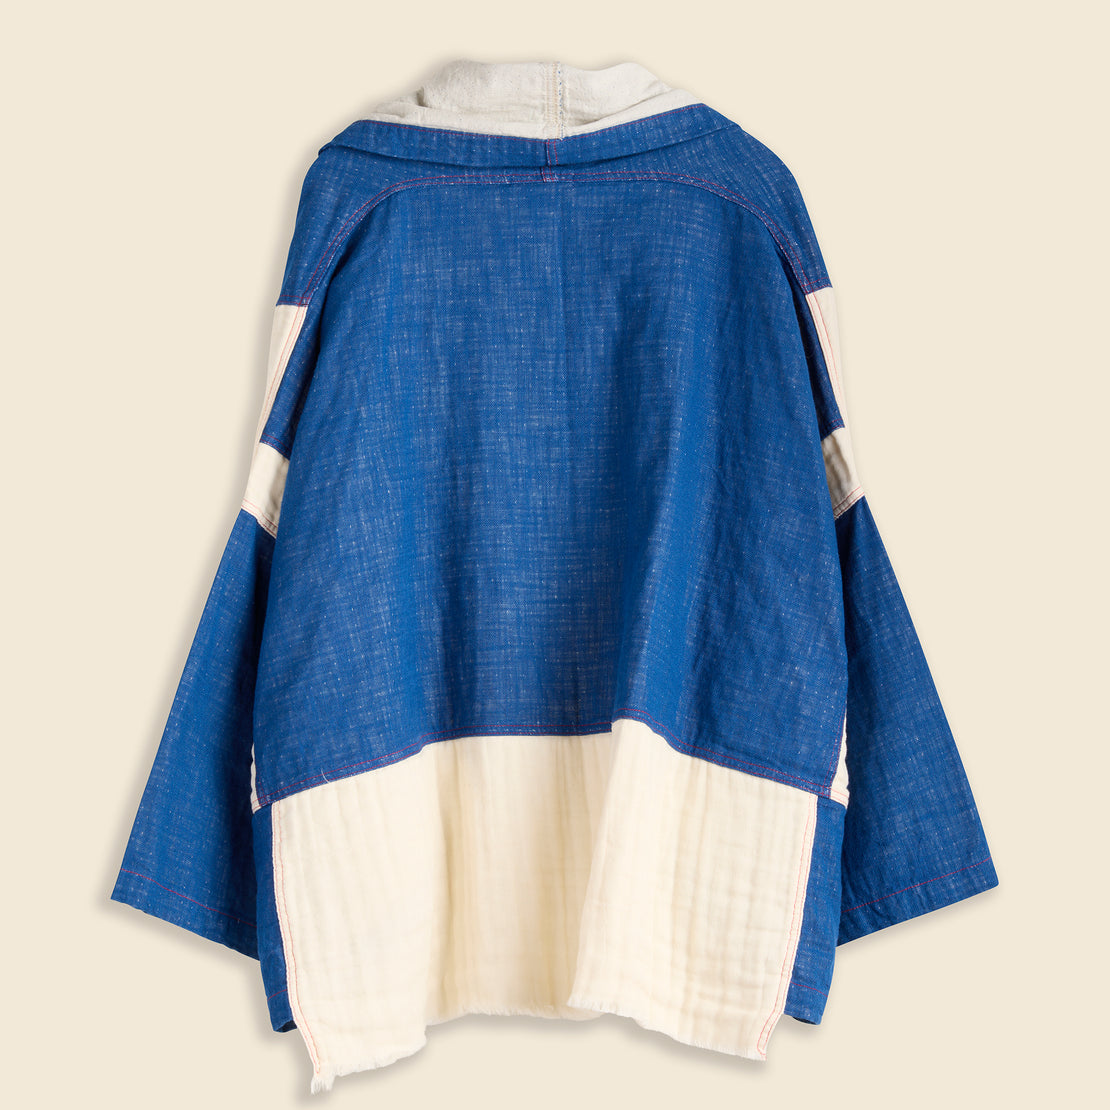 Kimono Jacket 5 Layer - Denim/Kinari - Atelier Delphine - STAG Provisions - W - Outerwear - Coat/Jacket